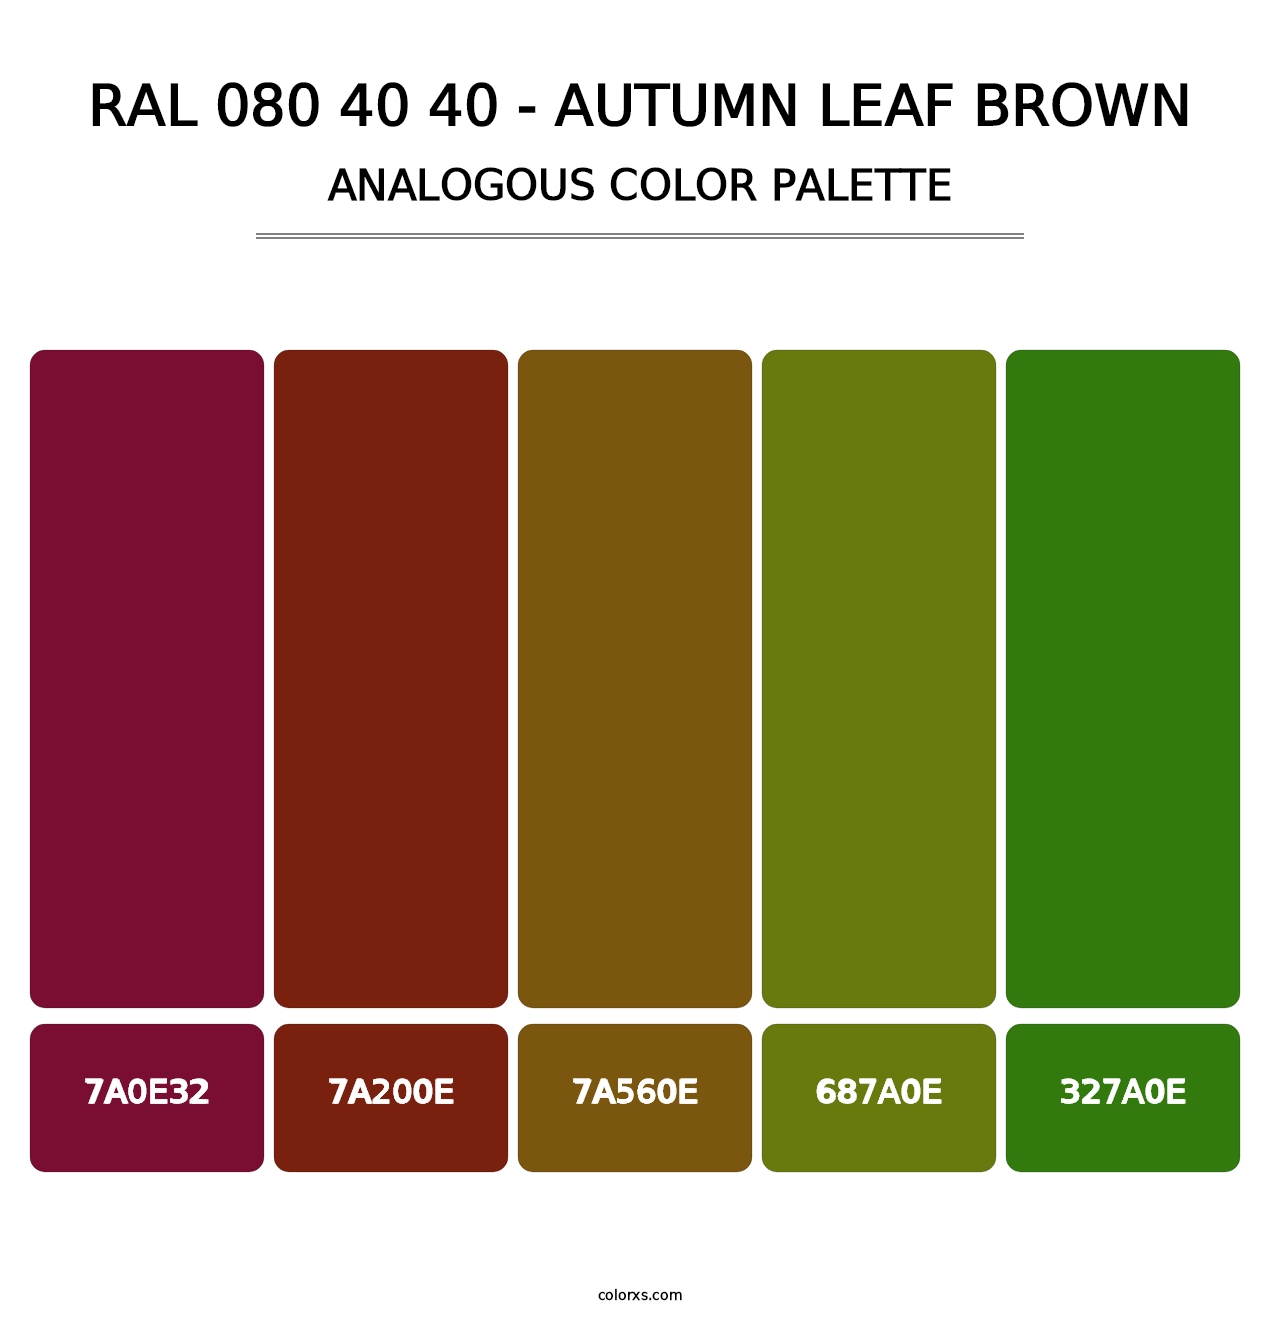 RAL 080 40 40 - Autumn Leaf Brown - Analogous Color Palette